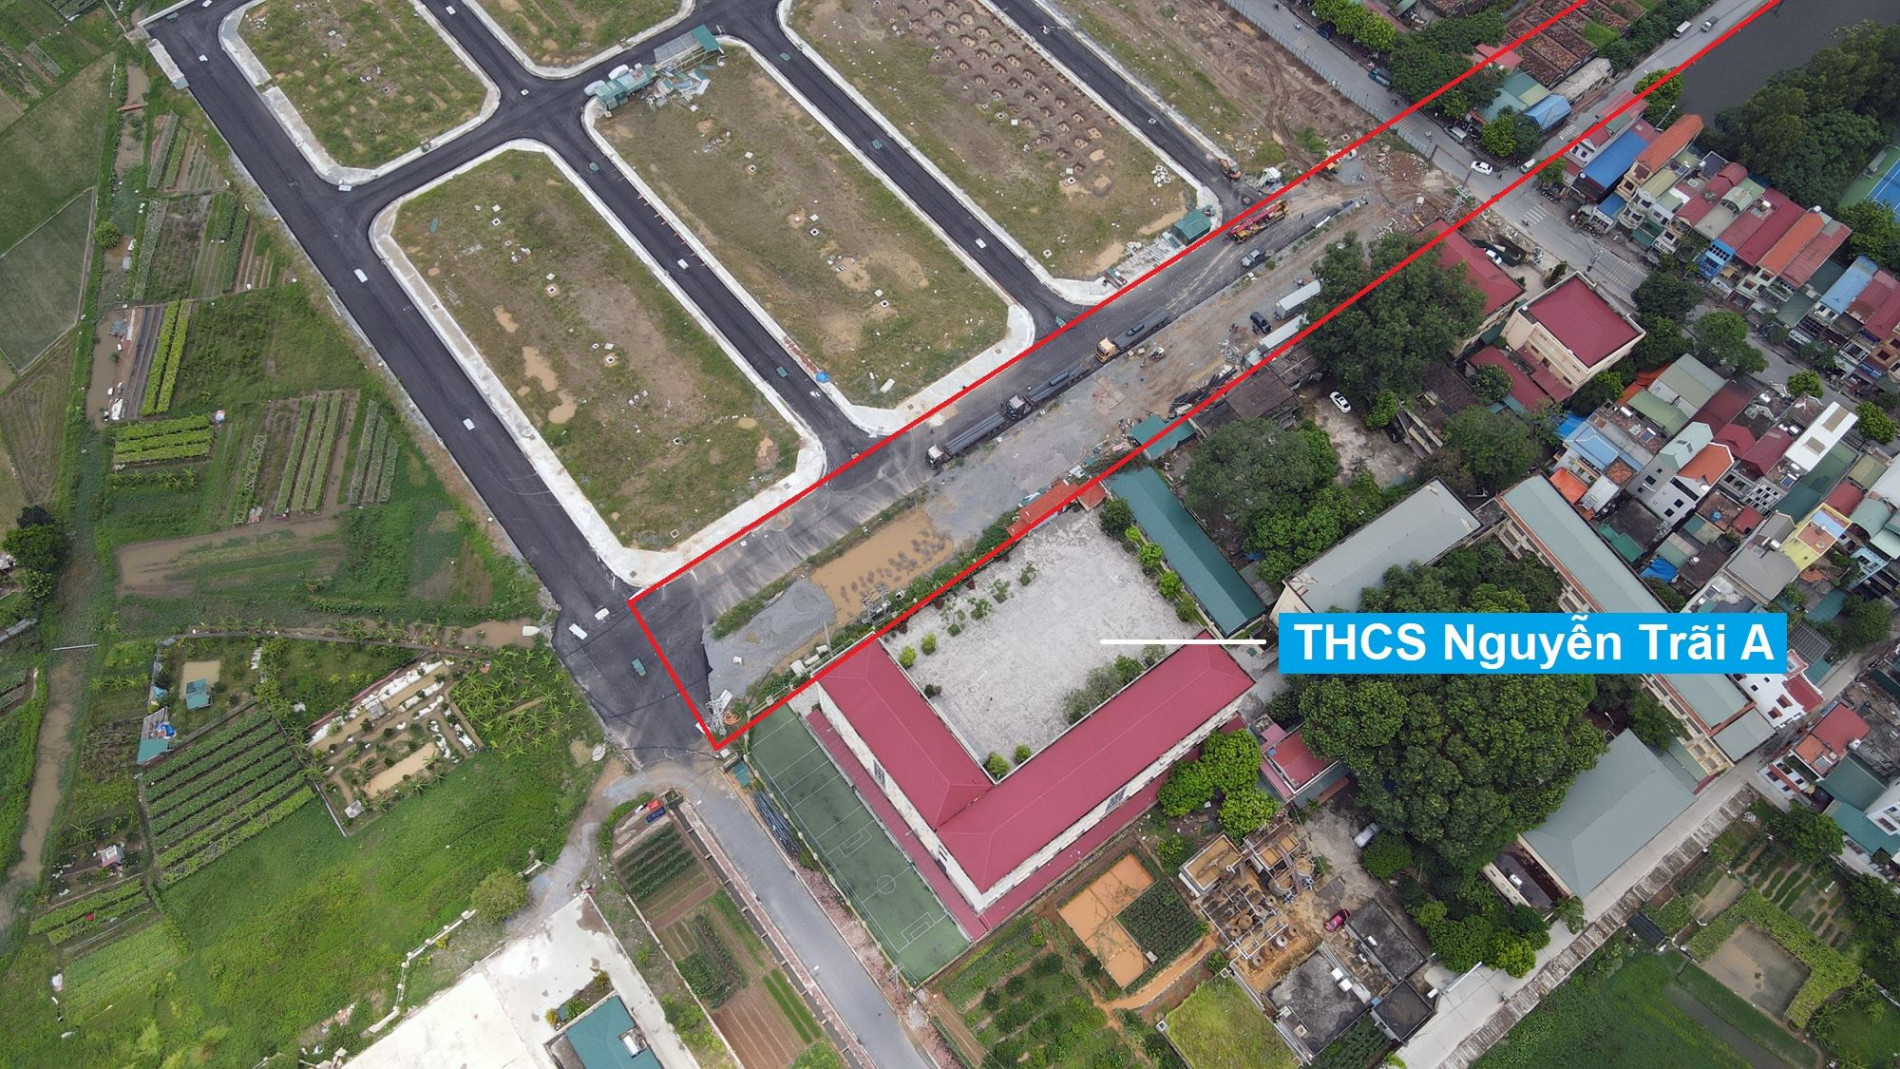 Đường sẽ mở theo quy hoạch ở thị trấn Thường Tín, Thường Tín, Hà Nội (phần 2)